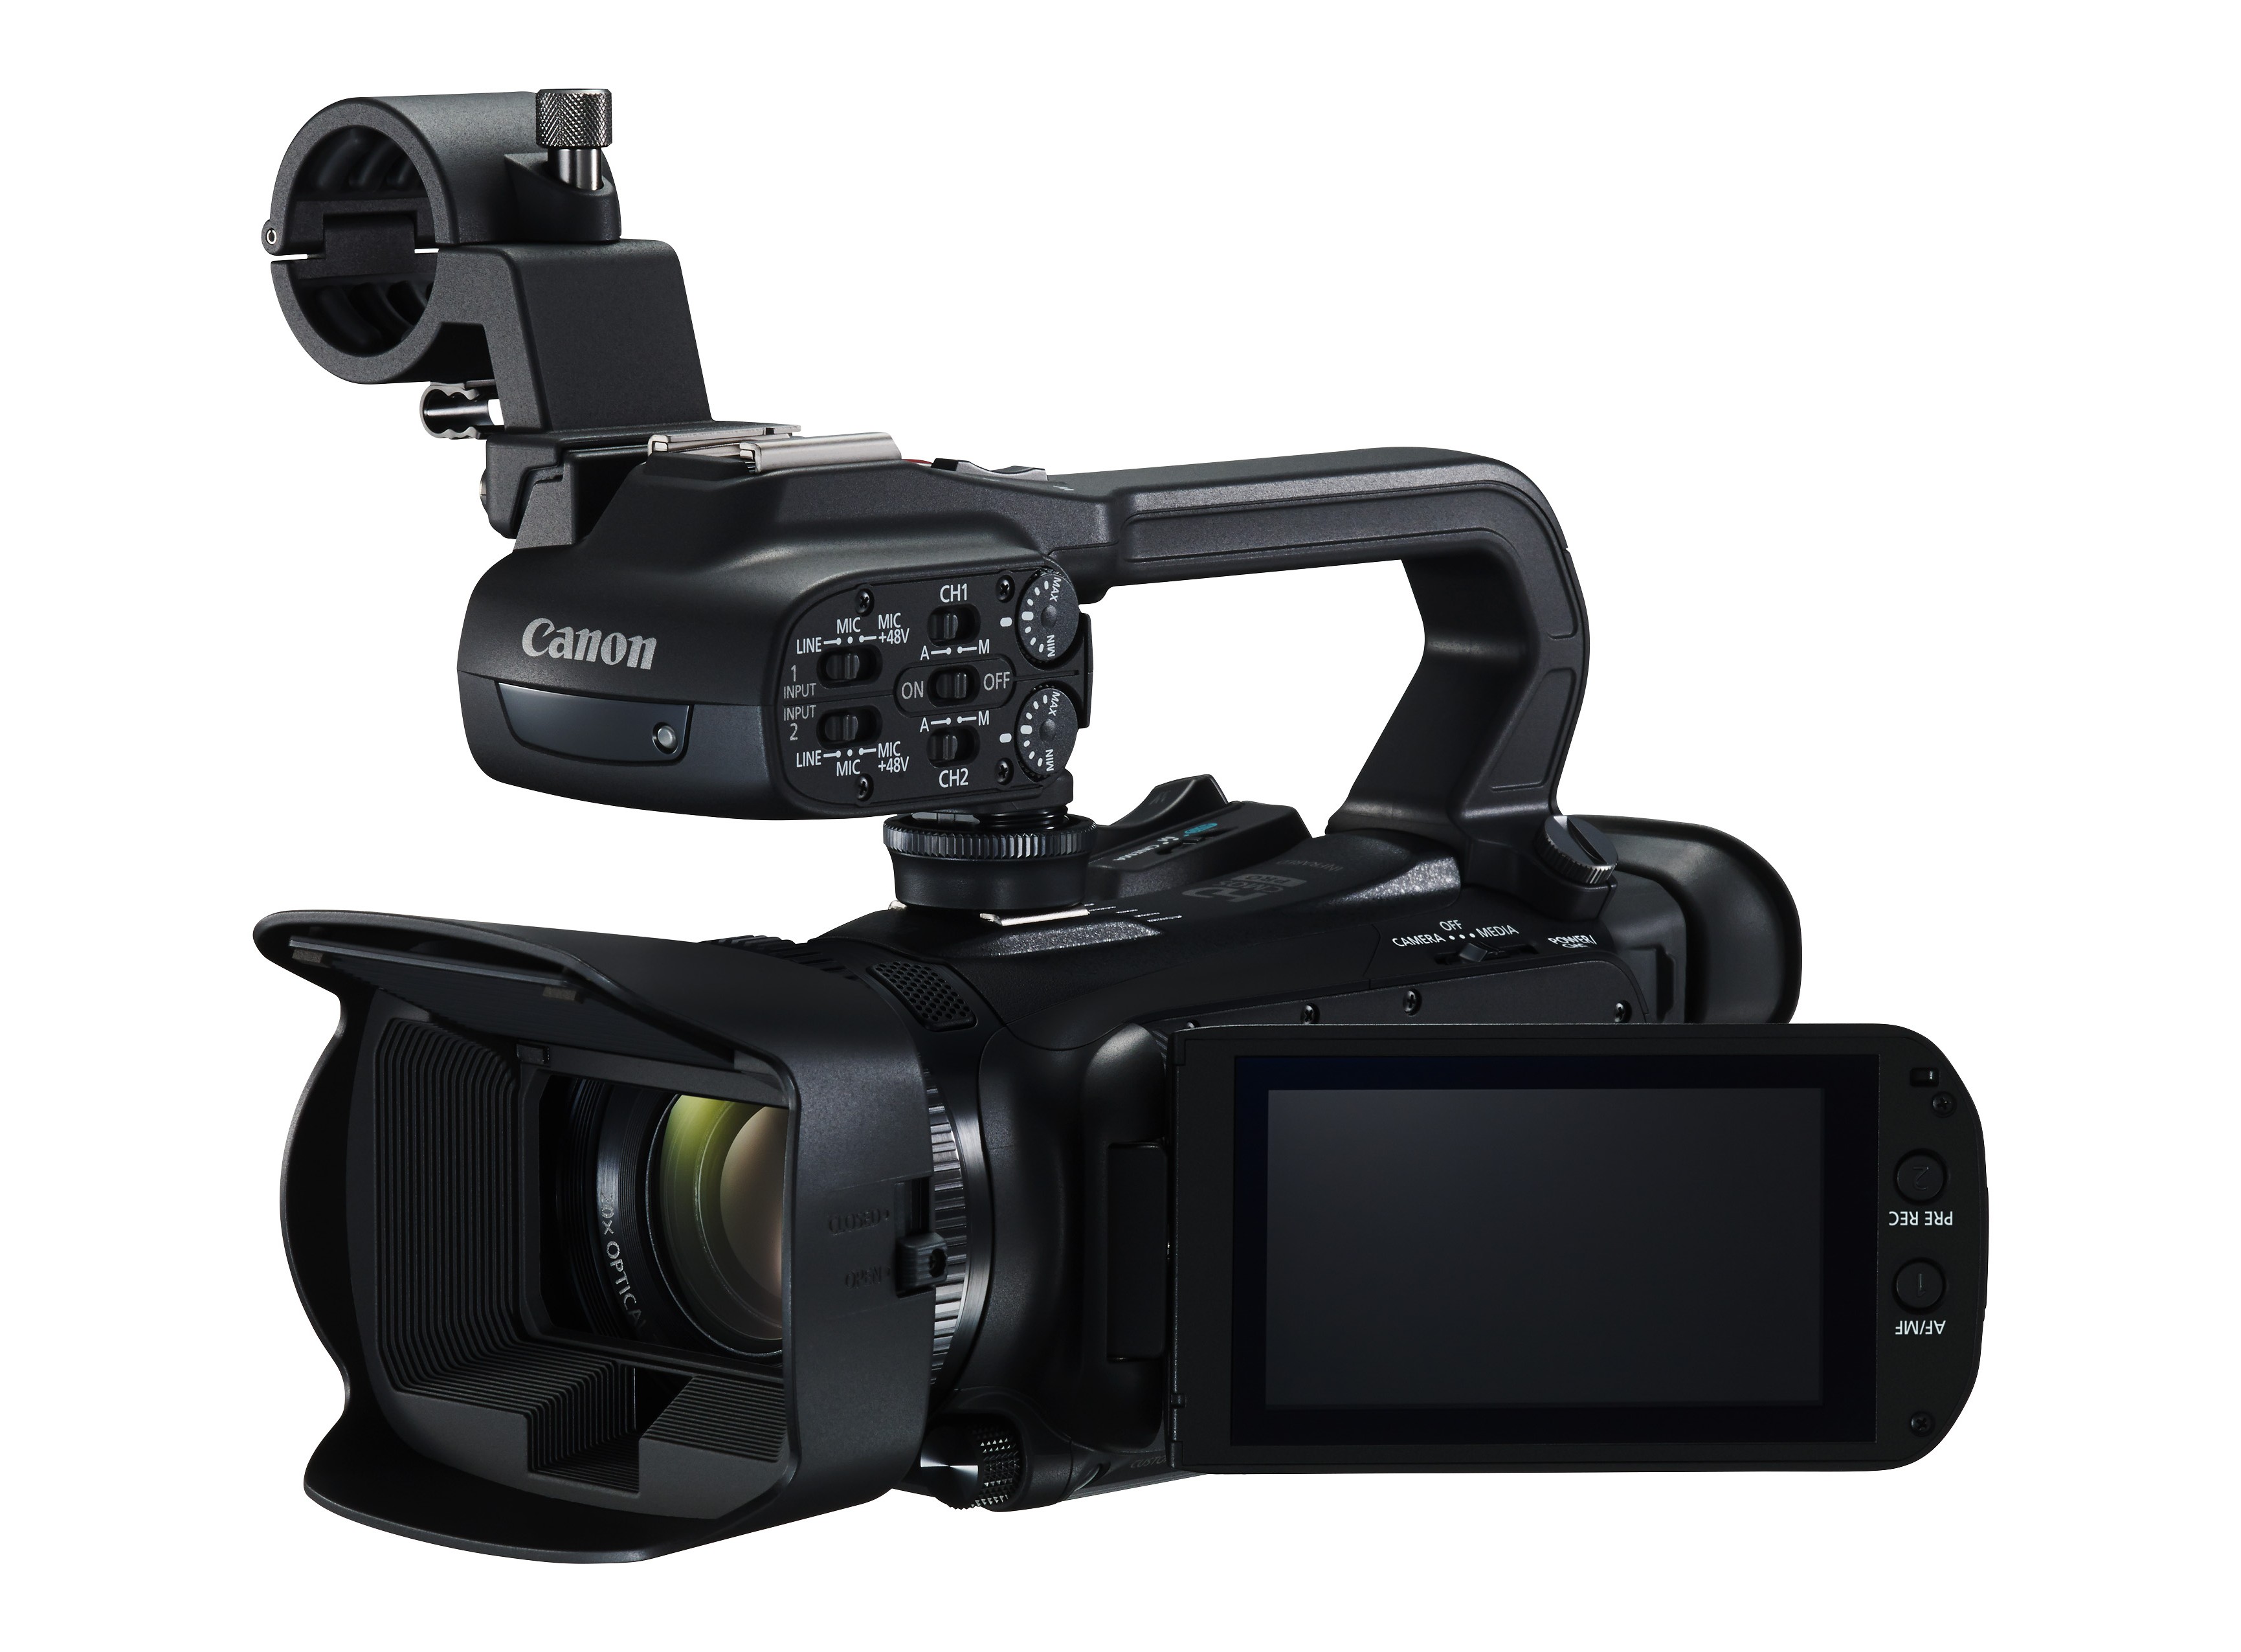 Canon XA15: Canon XA15 là sản phẩm chuyên nghiệp giúp bạn ghi lại các sự kiện quan trọng và tạo ra những video chất lượng cao. Với khả năng quay phim full HD và hệ thống ổn định hình ảnh thông minh, Canon XA15 là một trong những lựa chọn hàng đầu cho các nhà làm phim chuyên nghiệp. Hãy xem hình ảnh liên quan đến Canon XA15 để cảm nhận sự hiệu quả và tiện lợi của sản phẩm này.